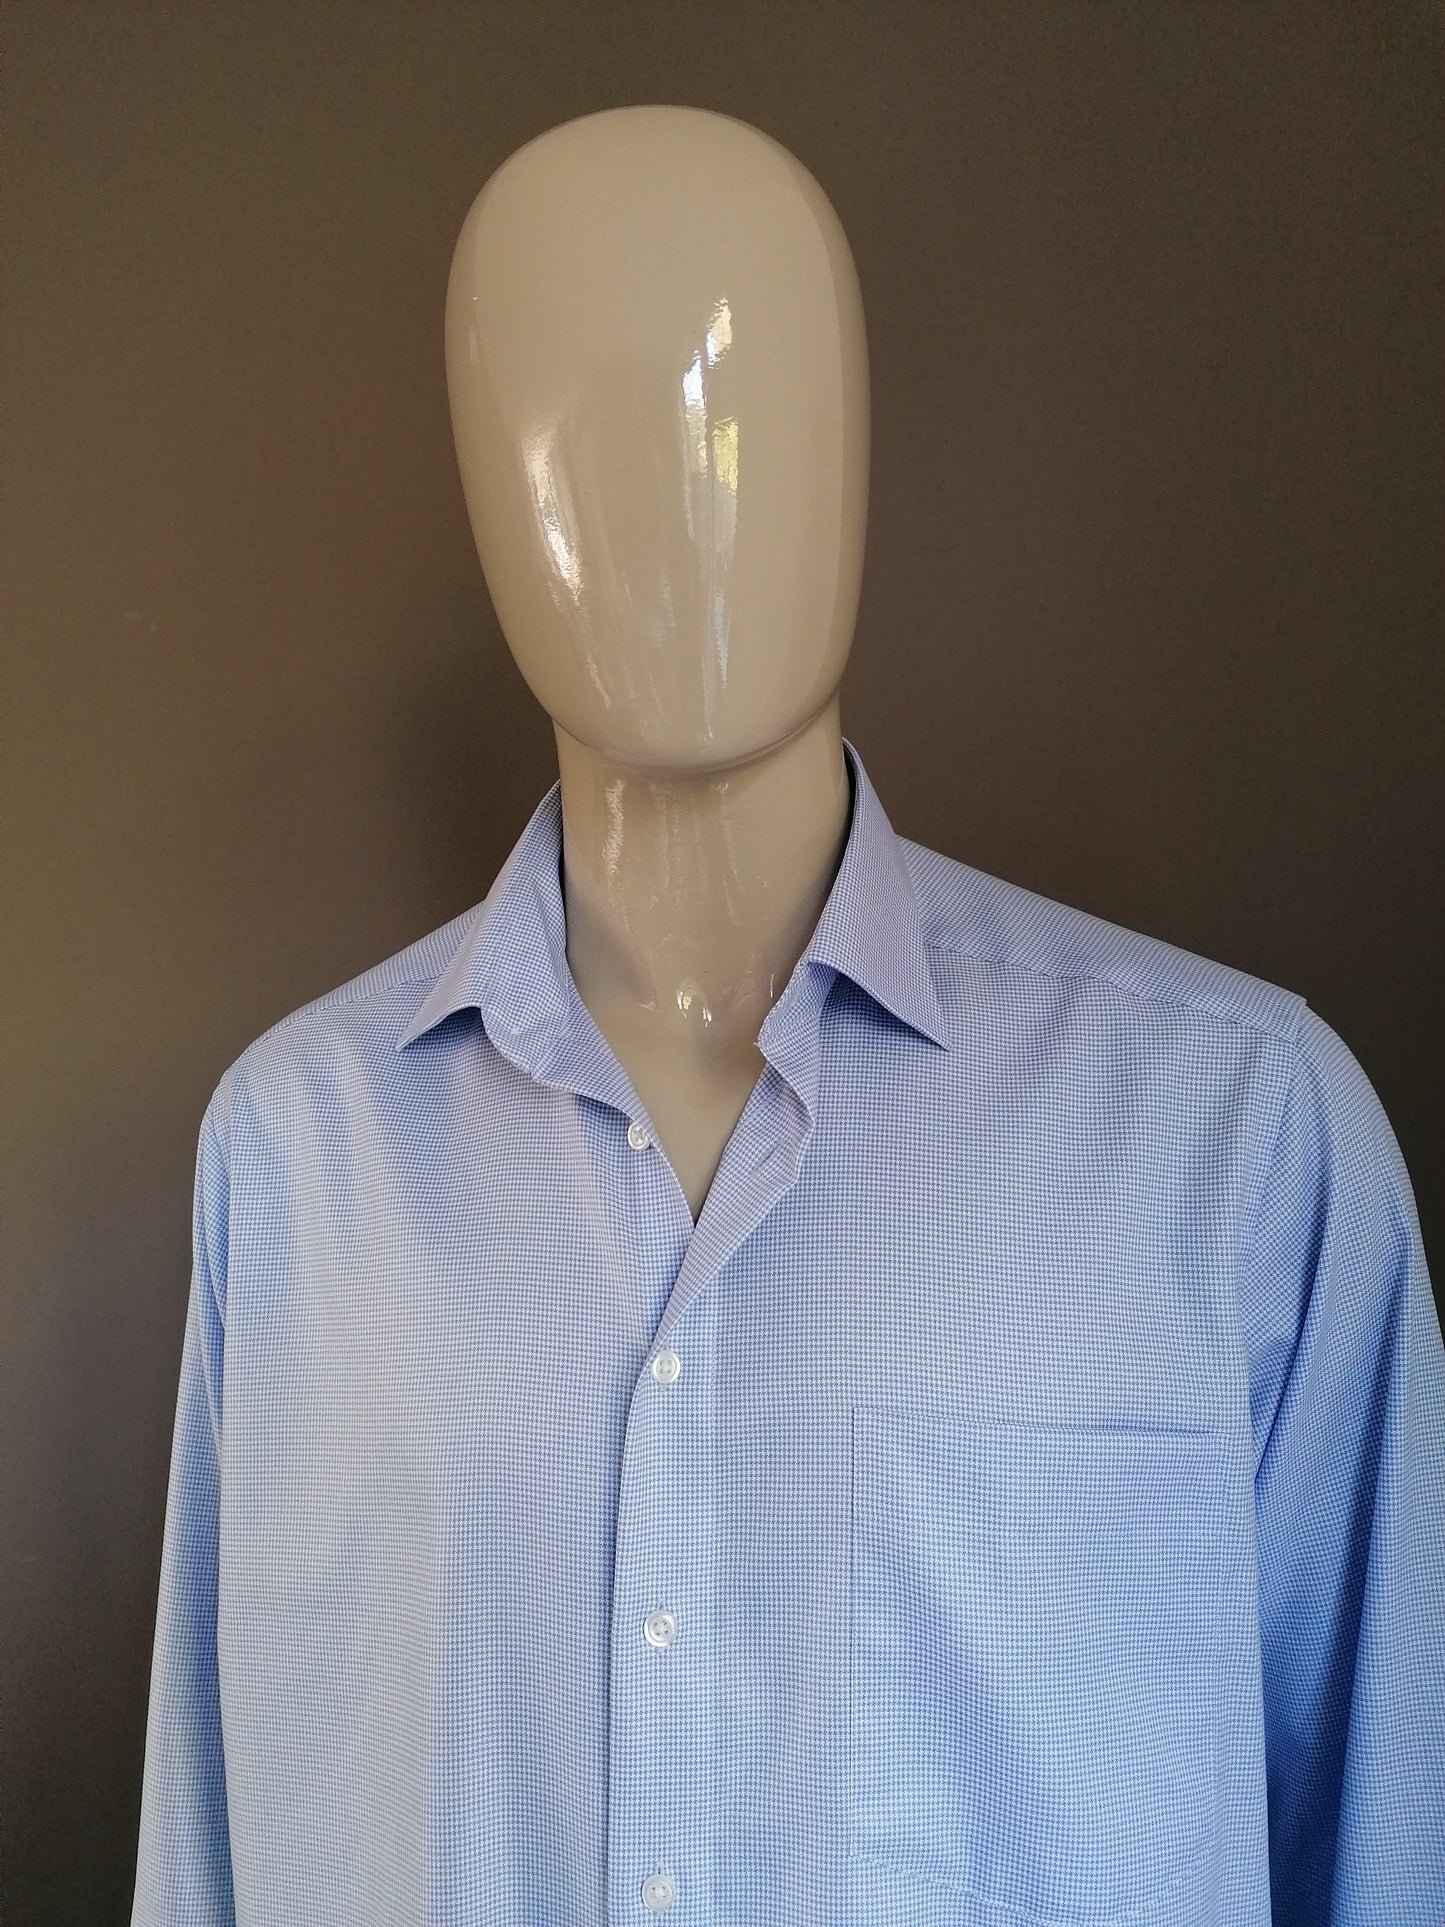 Camisa de clase real. Motivo blanco azul. Tamaño XXL / 2XL